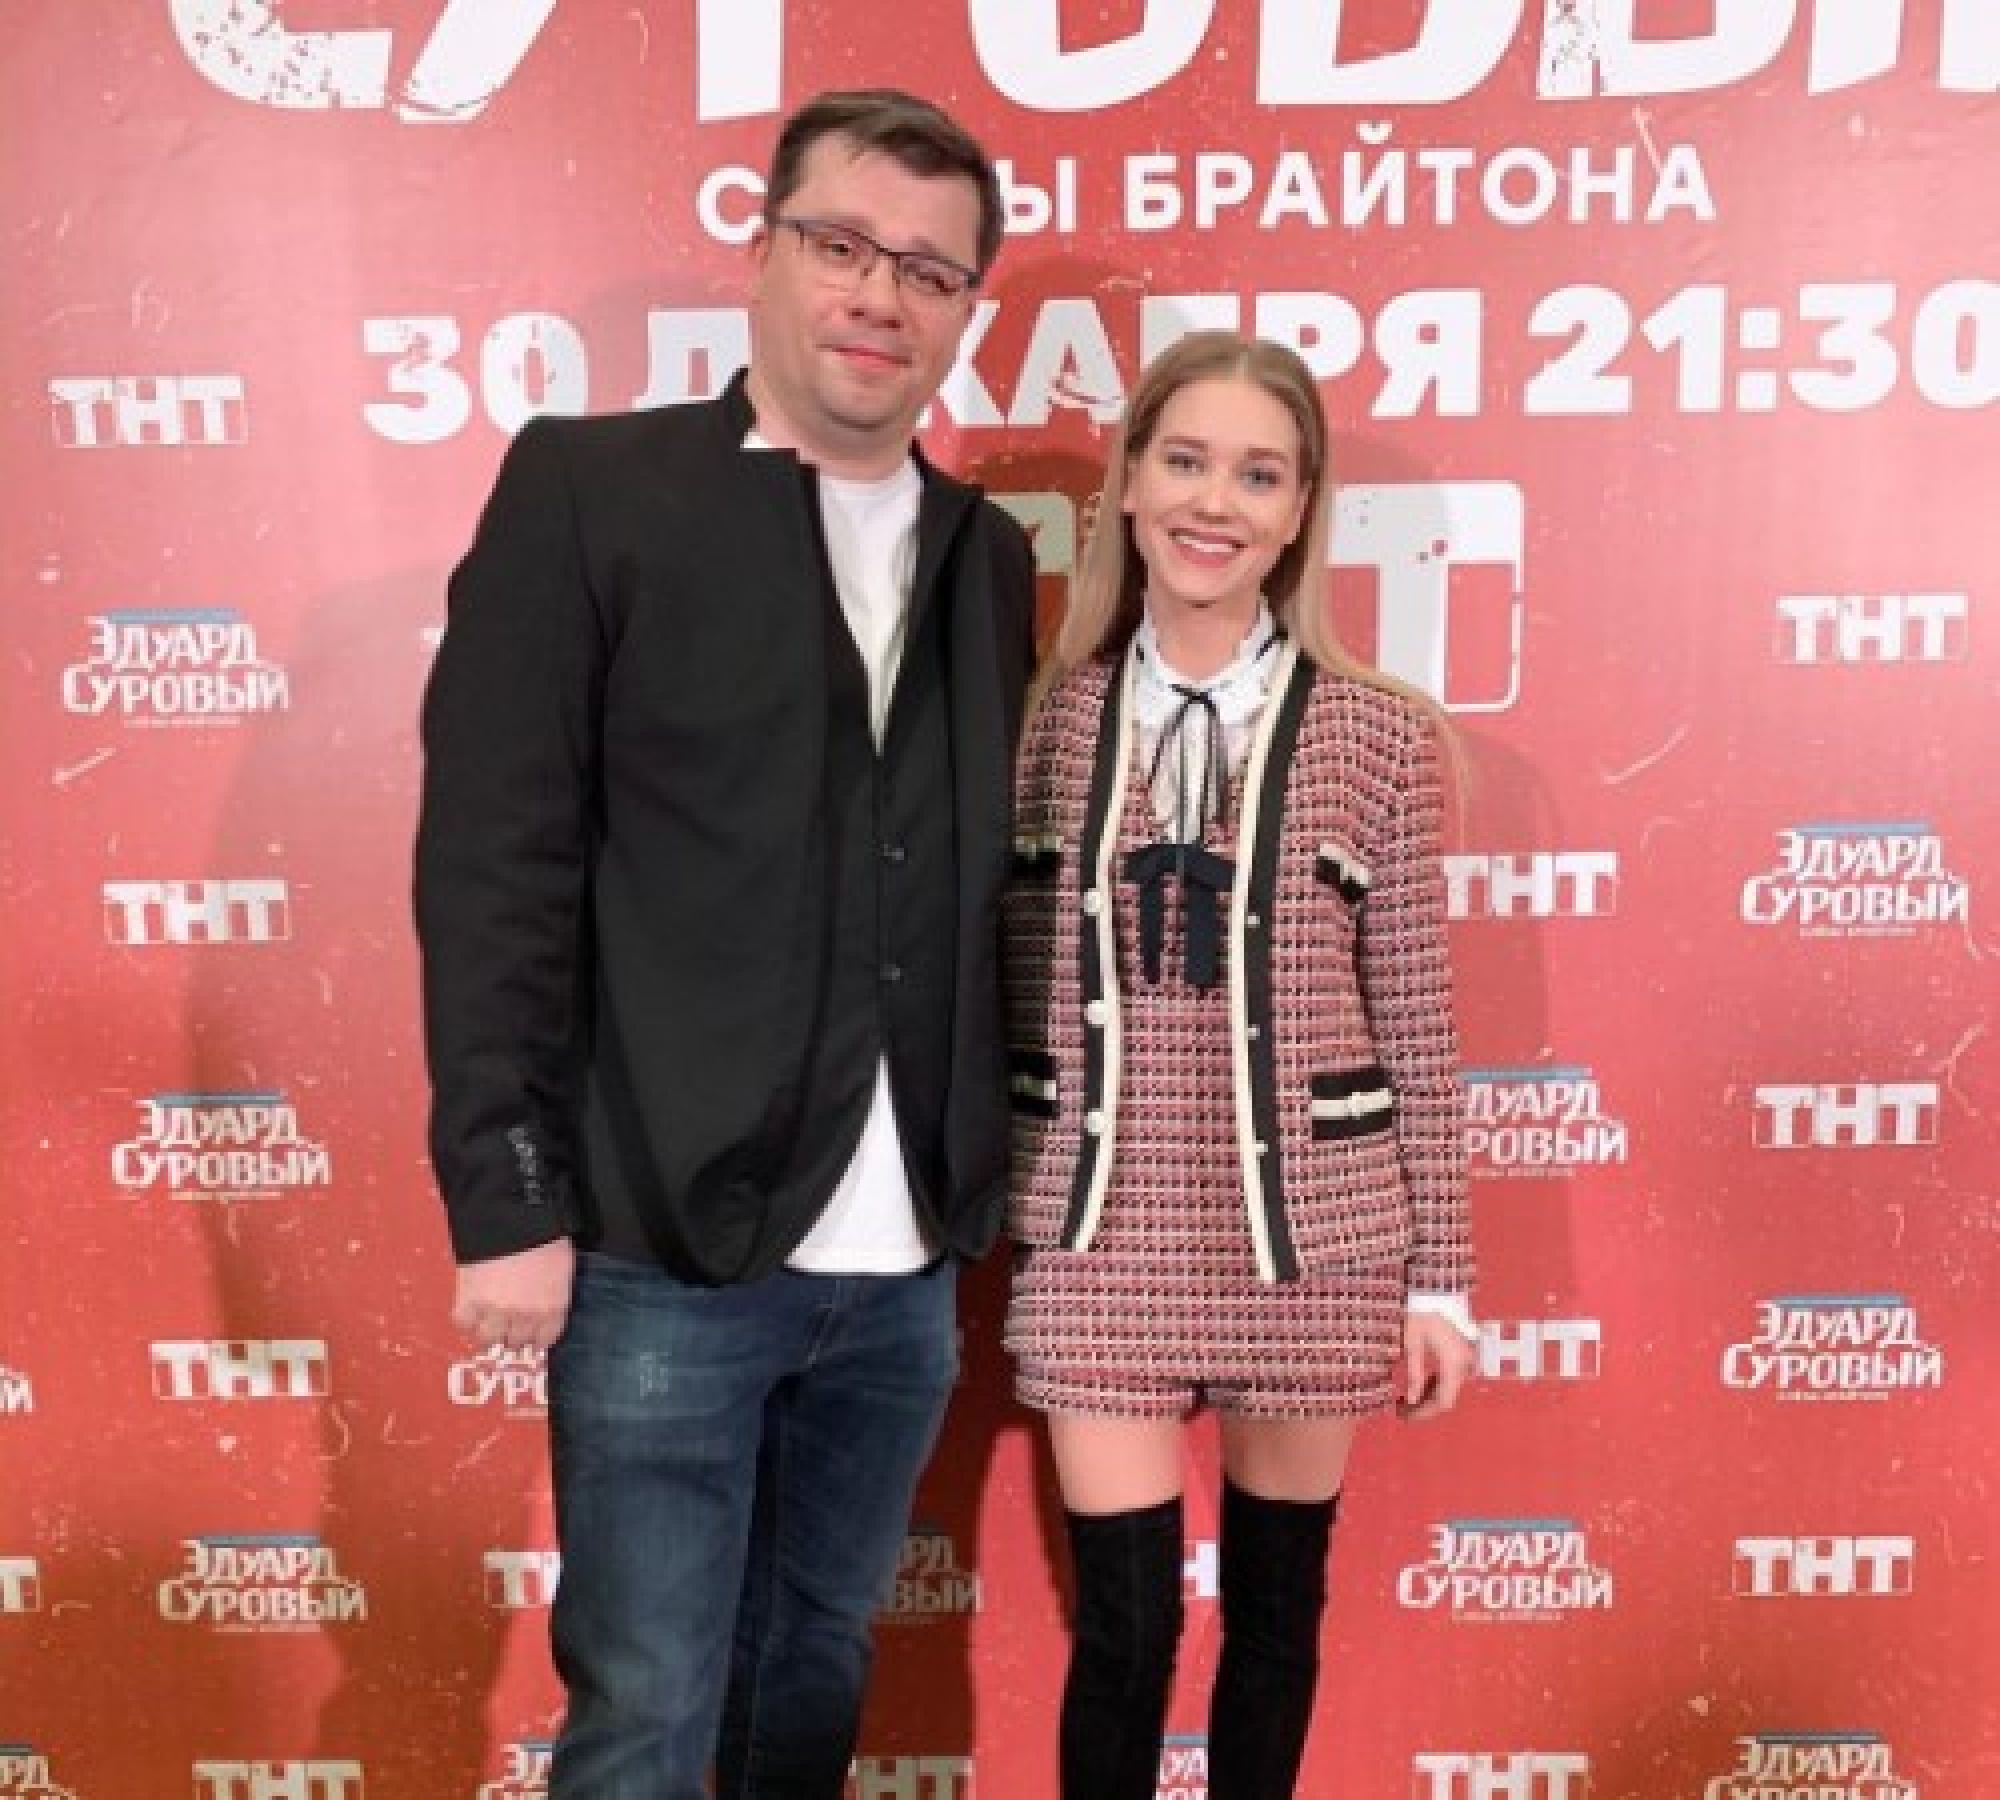 Гарик Харламов получил милое поздравление от Кристины Асмус